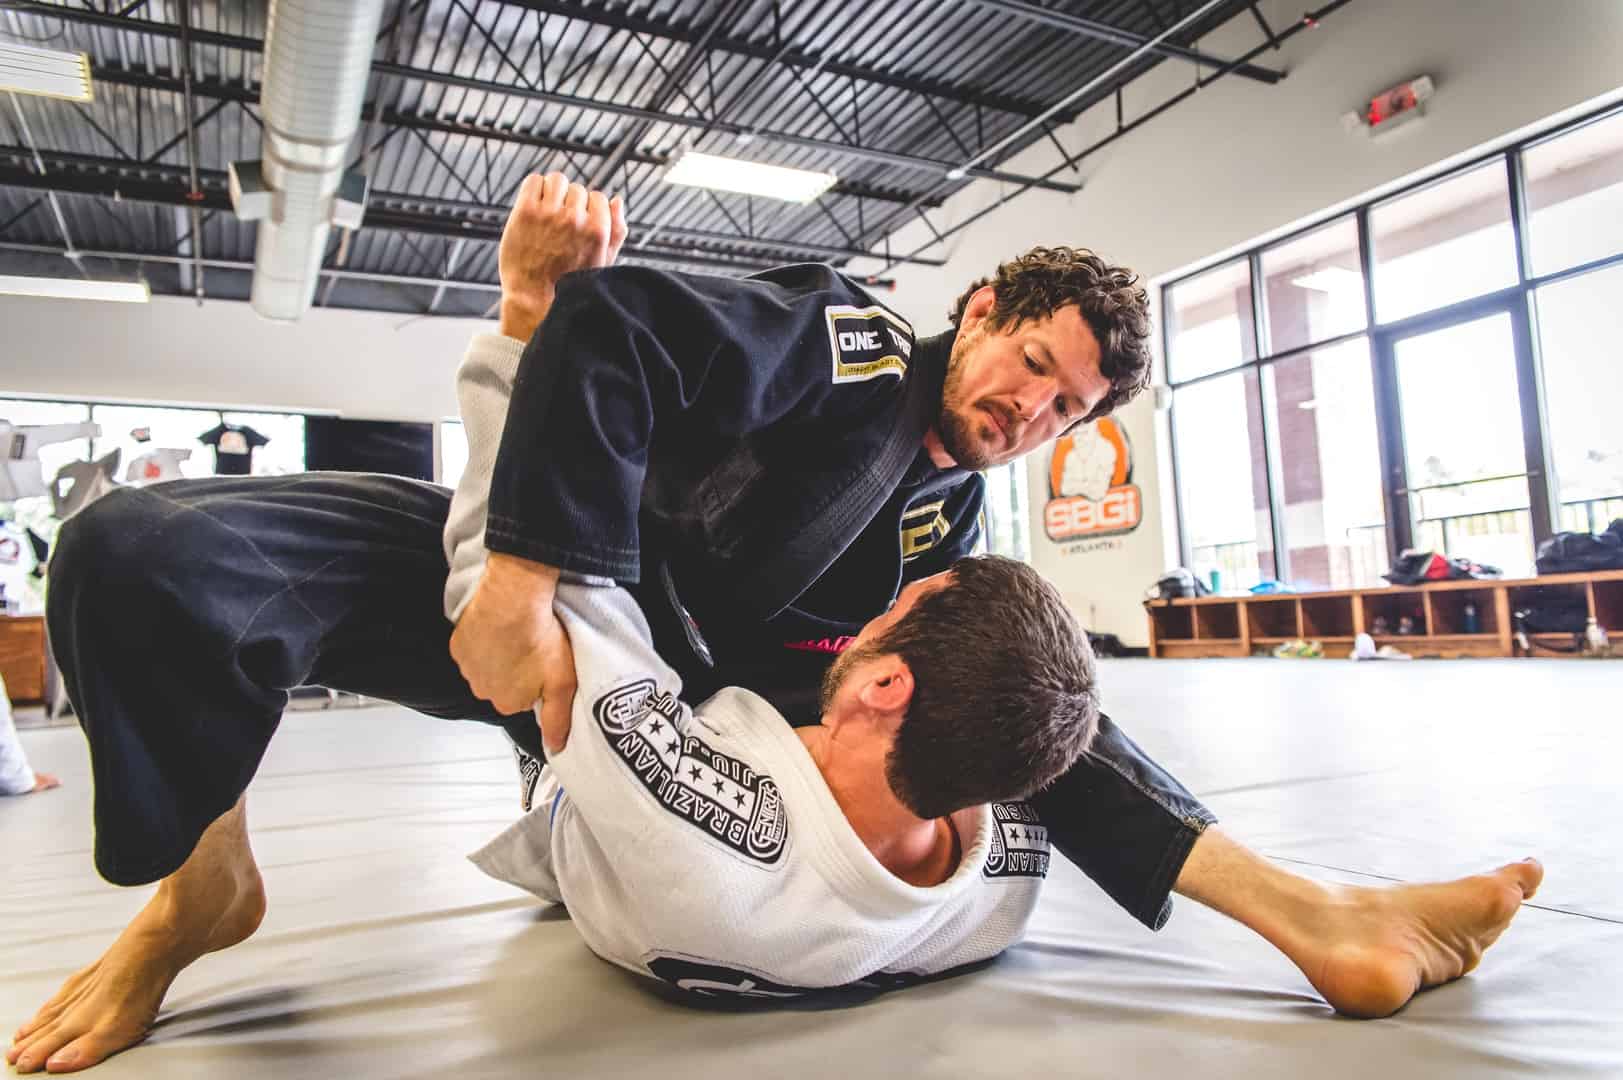 Brazilian Jiu Jitsu Mount Instruction at SBG Buford